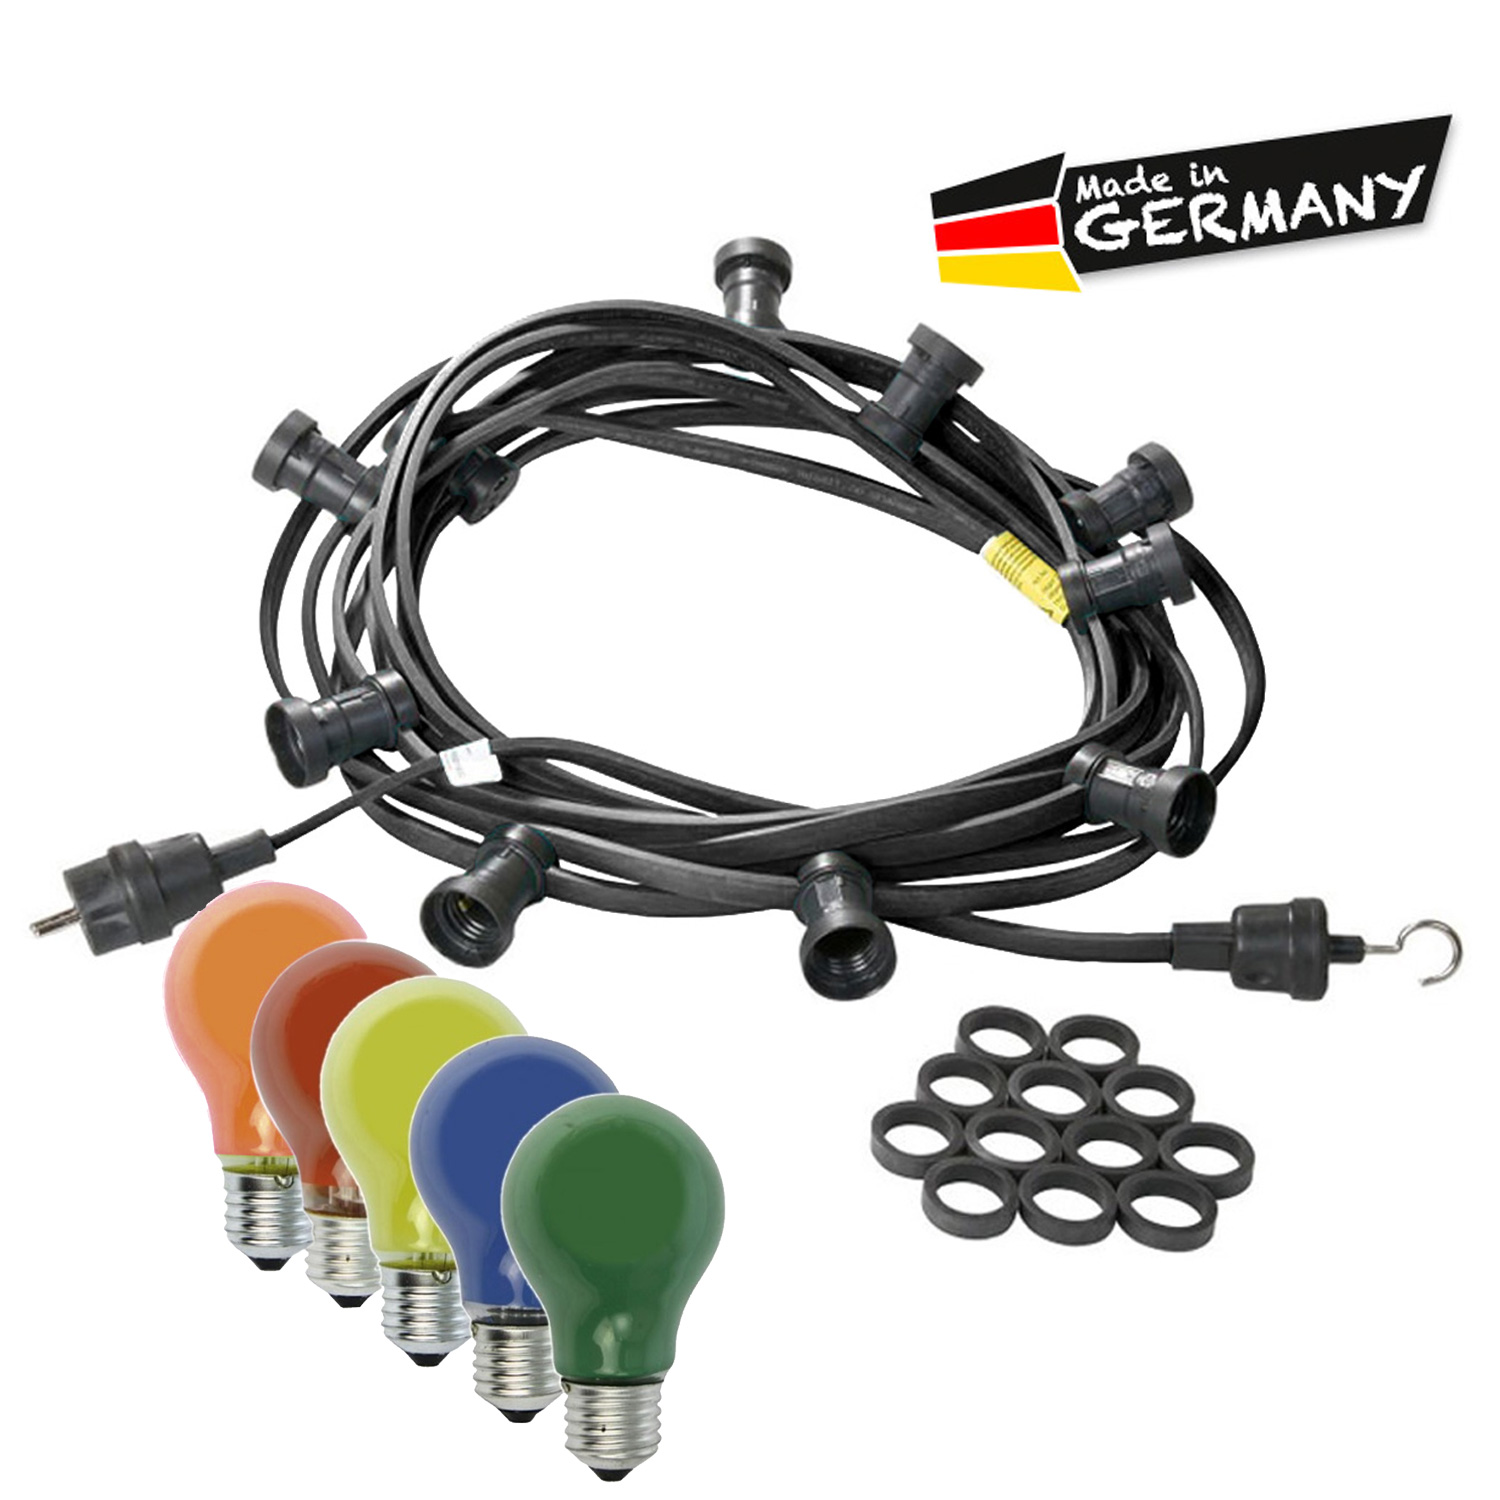 Illu-/Partylichterkette 30m - Außenlichterkette schwarz - Made in Germany - 30 bunte 25W Glühlampen